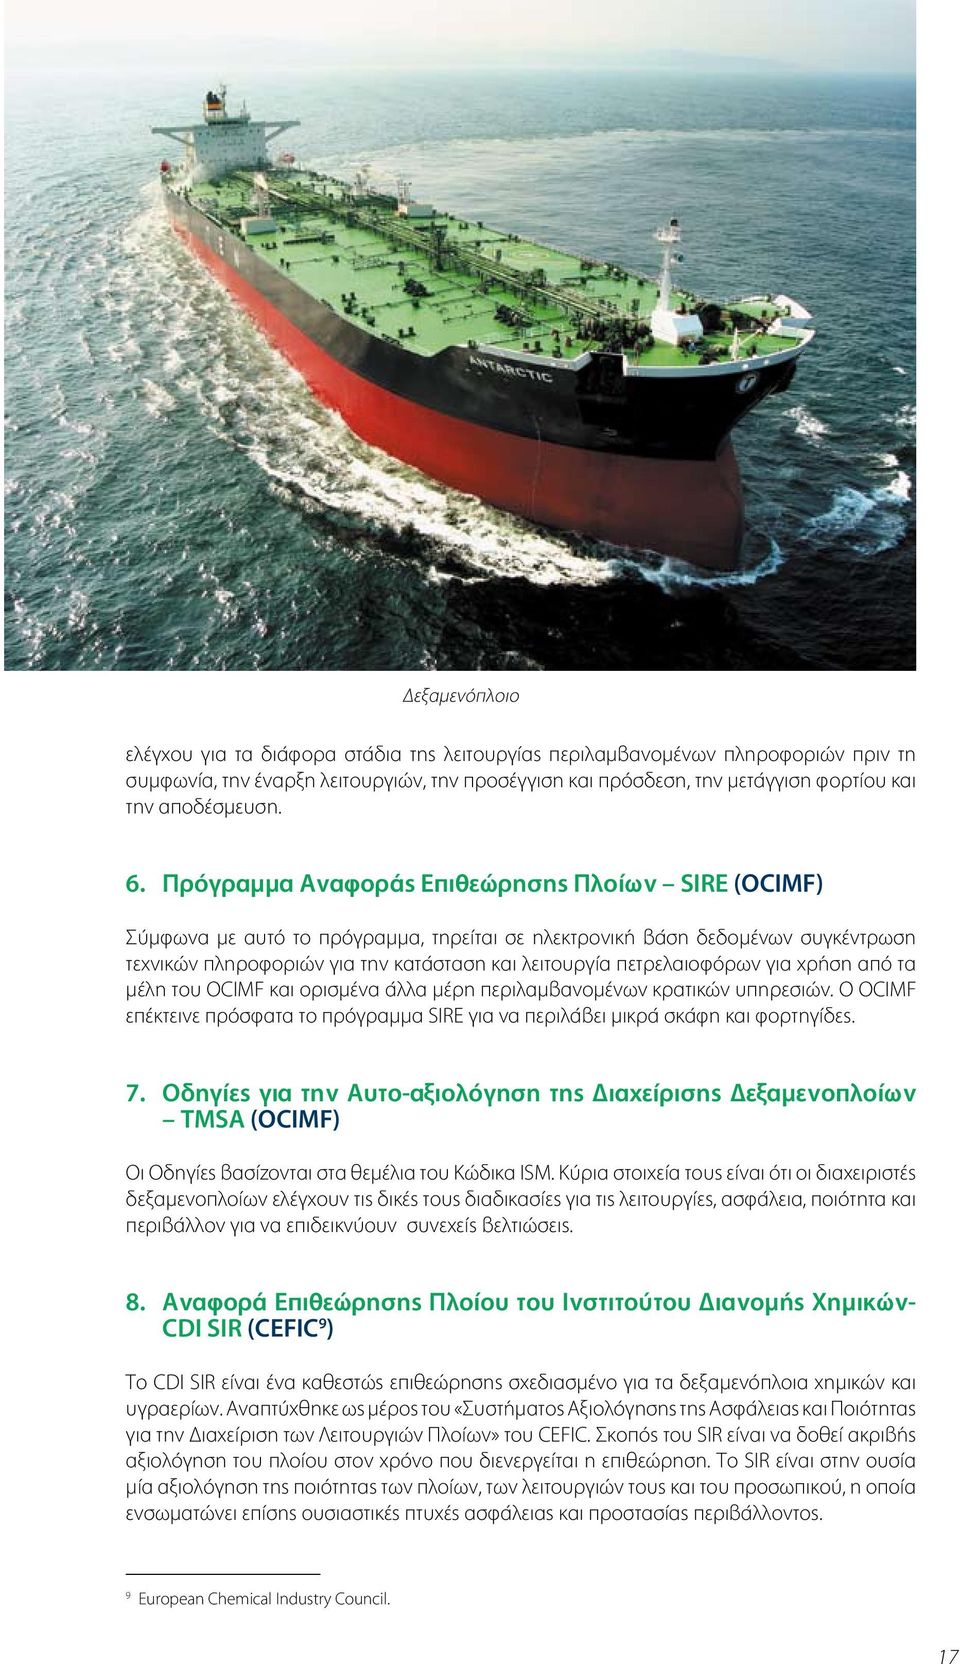 Πρόγραμμα Αναφοράς Επιθεώρησης Πλοίων SIRE (OCIMF) Σύμφωνα με αυτό το πρόγραμμα, τηρείται σε ηλεκτρονική βάση δεδομένων συγκέντρωση τεχνικών πληροφοριών για την κατάσταση και λειτουργία